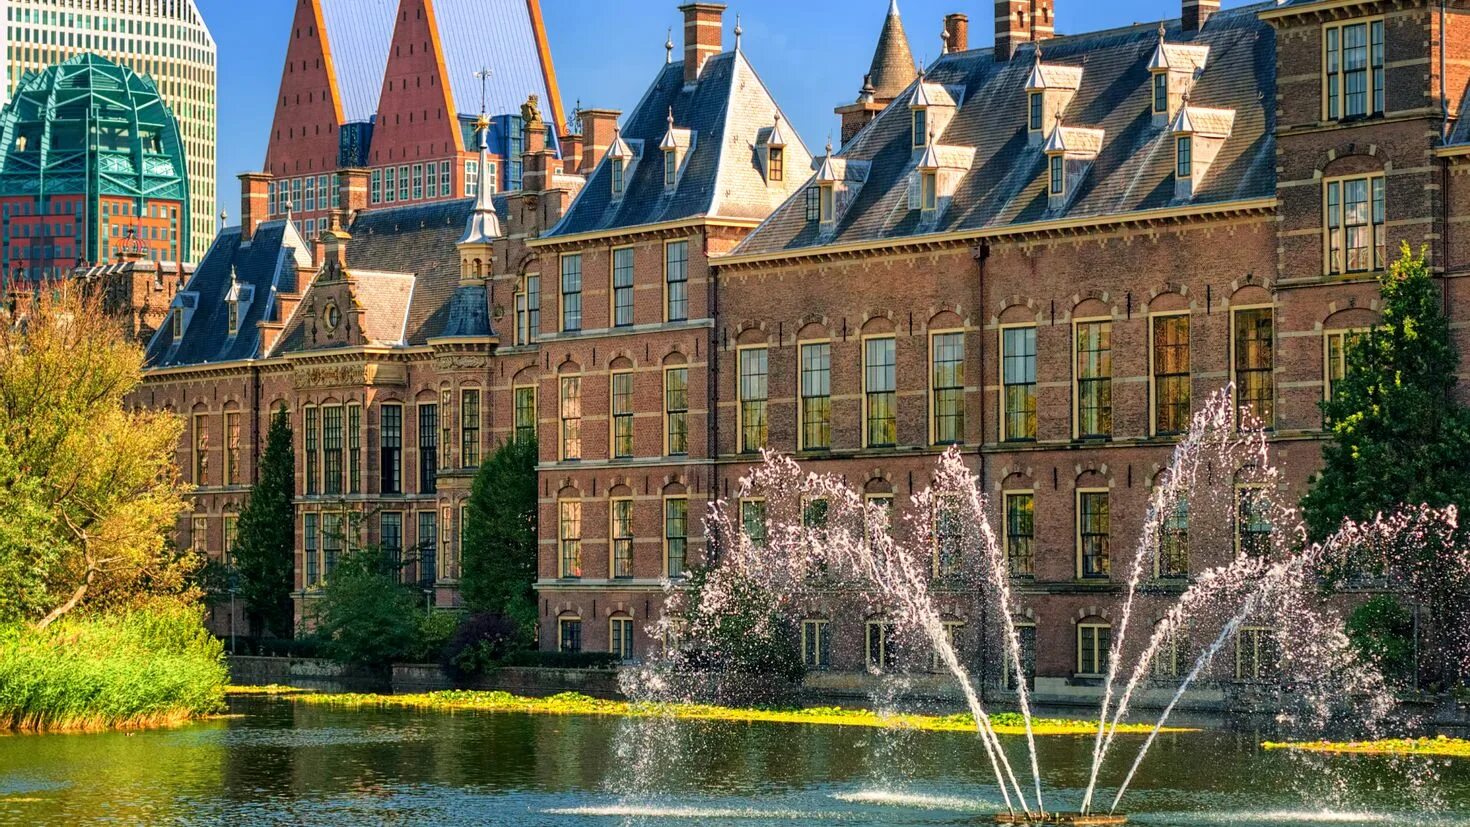 Бинненхоф Гаага. Замок Бинненхоф. Королевство Нидерланды Гаага. Гаага панорама. Гаага что это